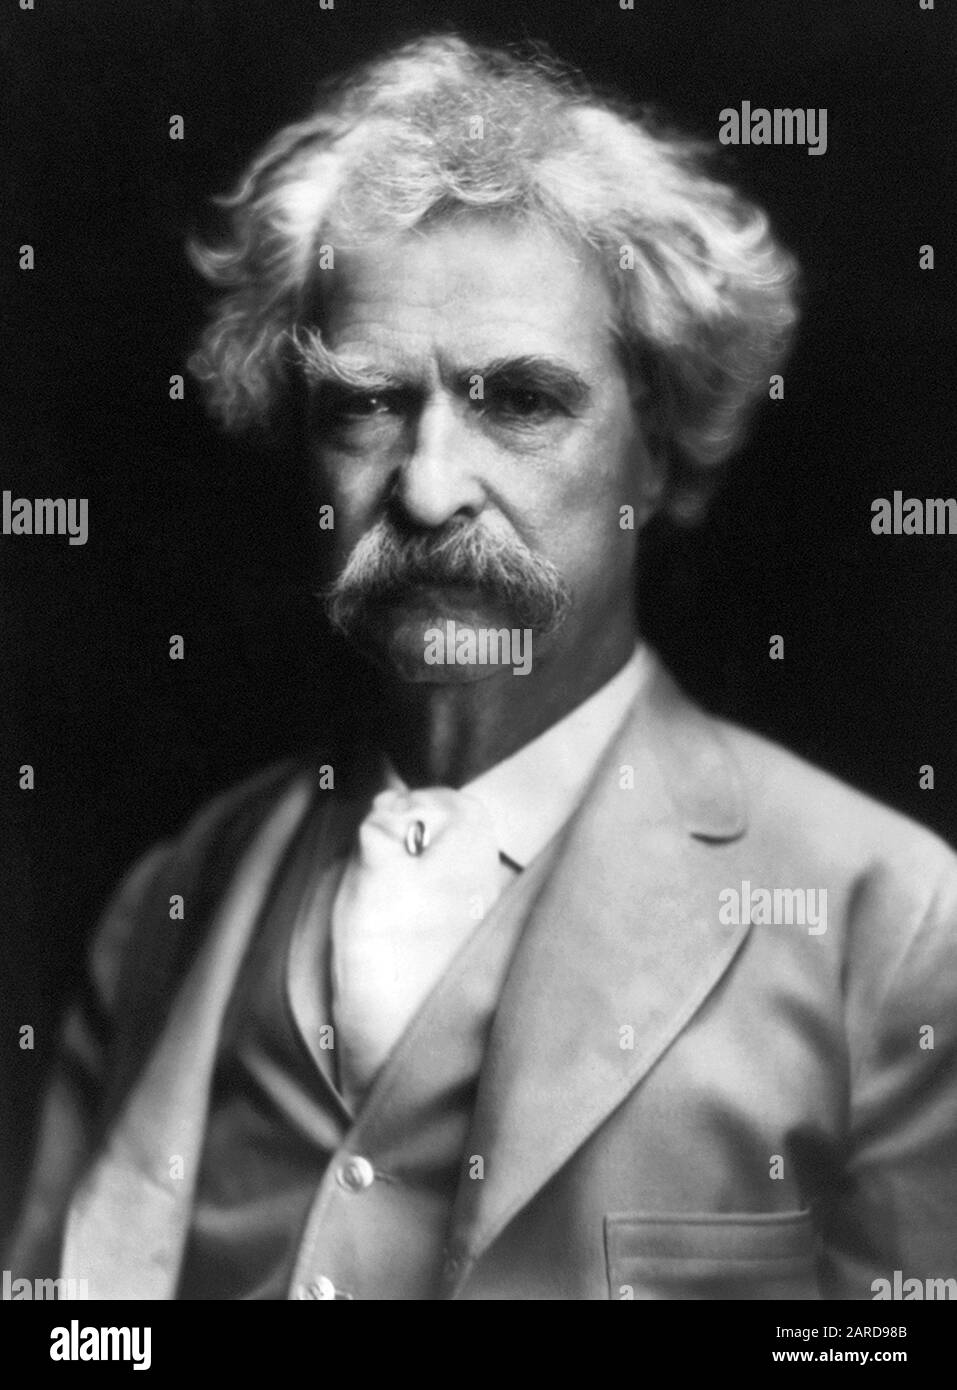 Photo de portrait vintage de l'écrivain et humoriste américain Samuel Langhorne Clemens (1835 – 1910), mieux connu par son nom de plume de Mark Twain. Photo vers 1907. Banque D'Images